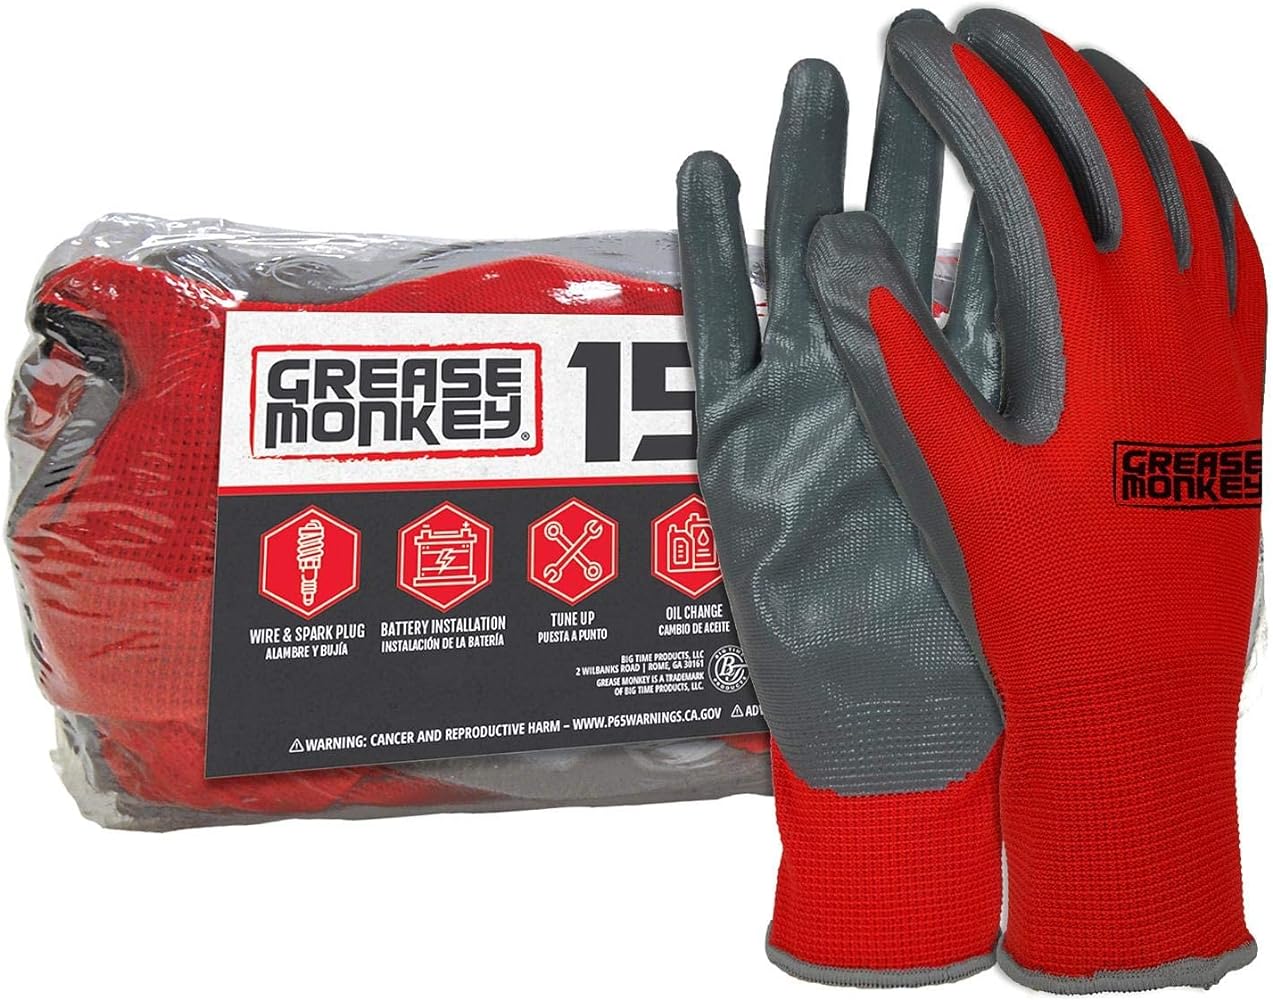 GREASE MONKEY Nitrile Coated Work Gloves - 15 Pairs - Size Large